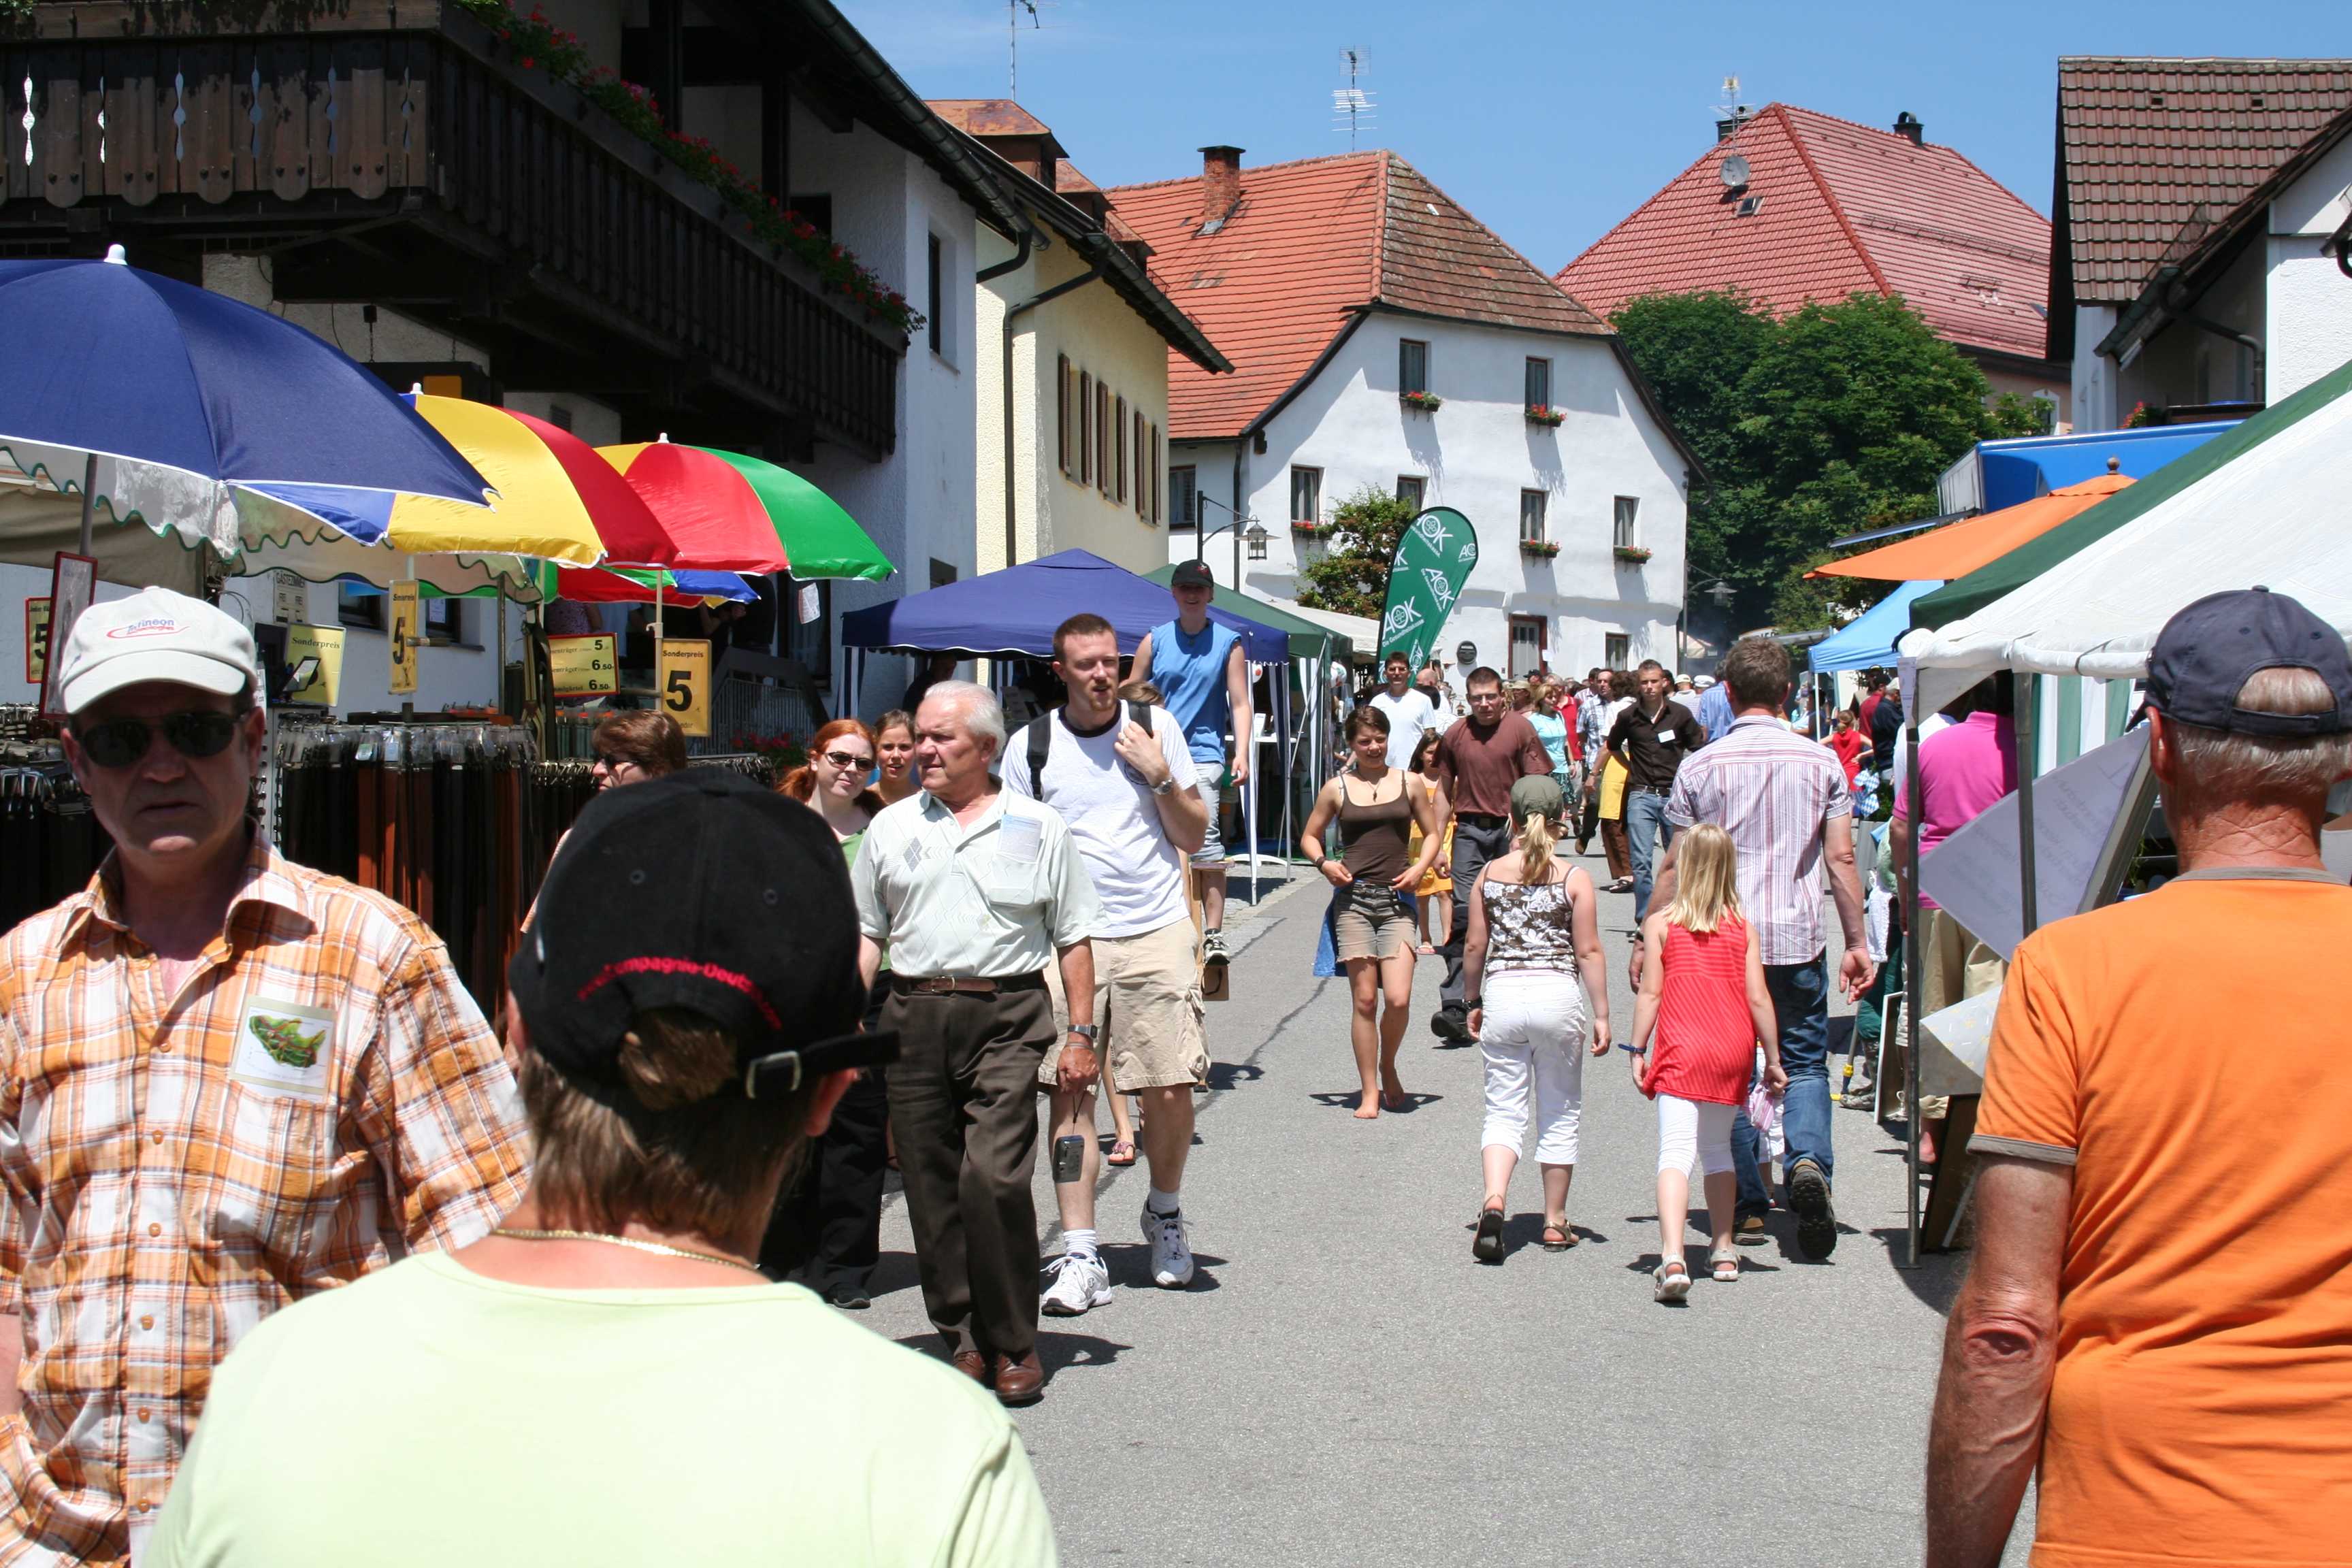 Buntes Markttreiben in der Burgstraße2.jpg